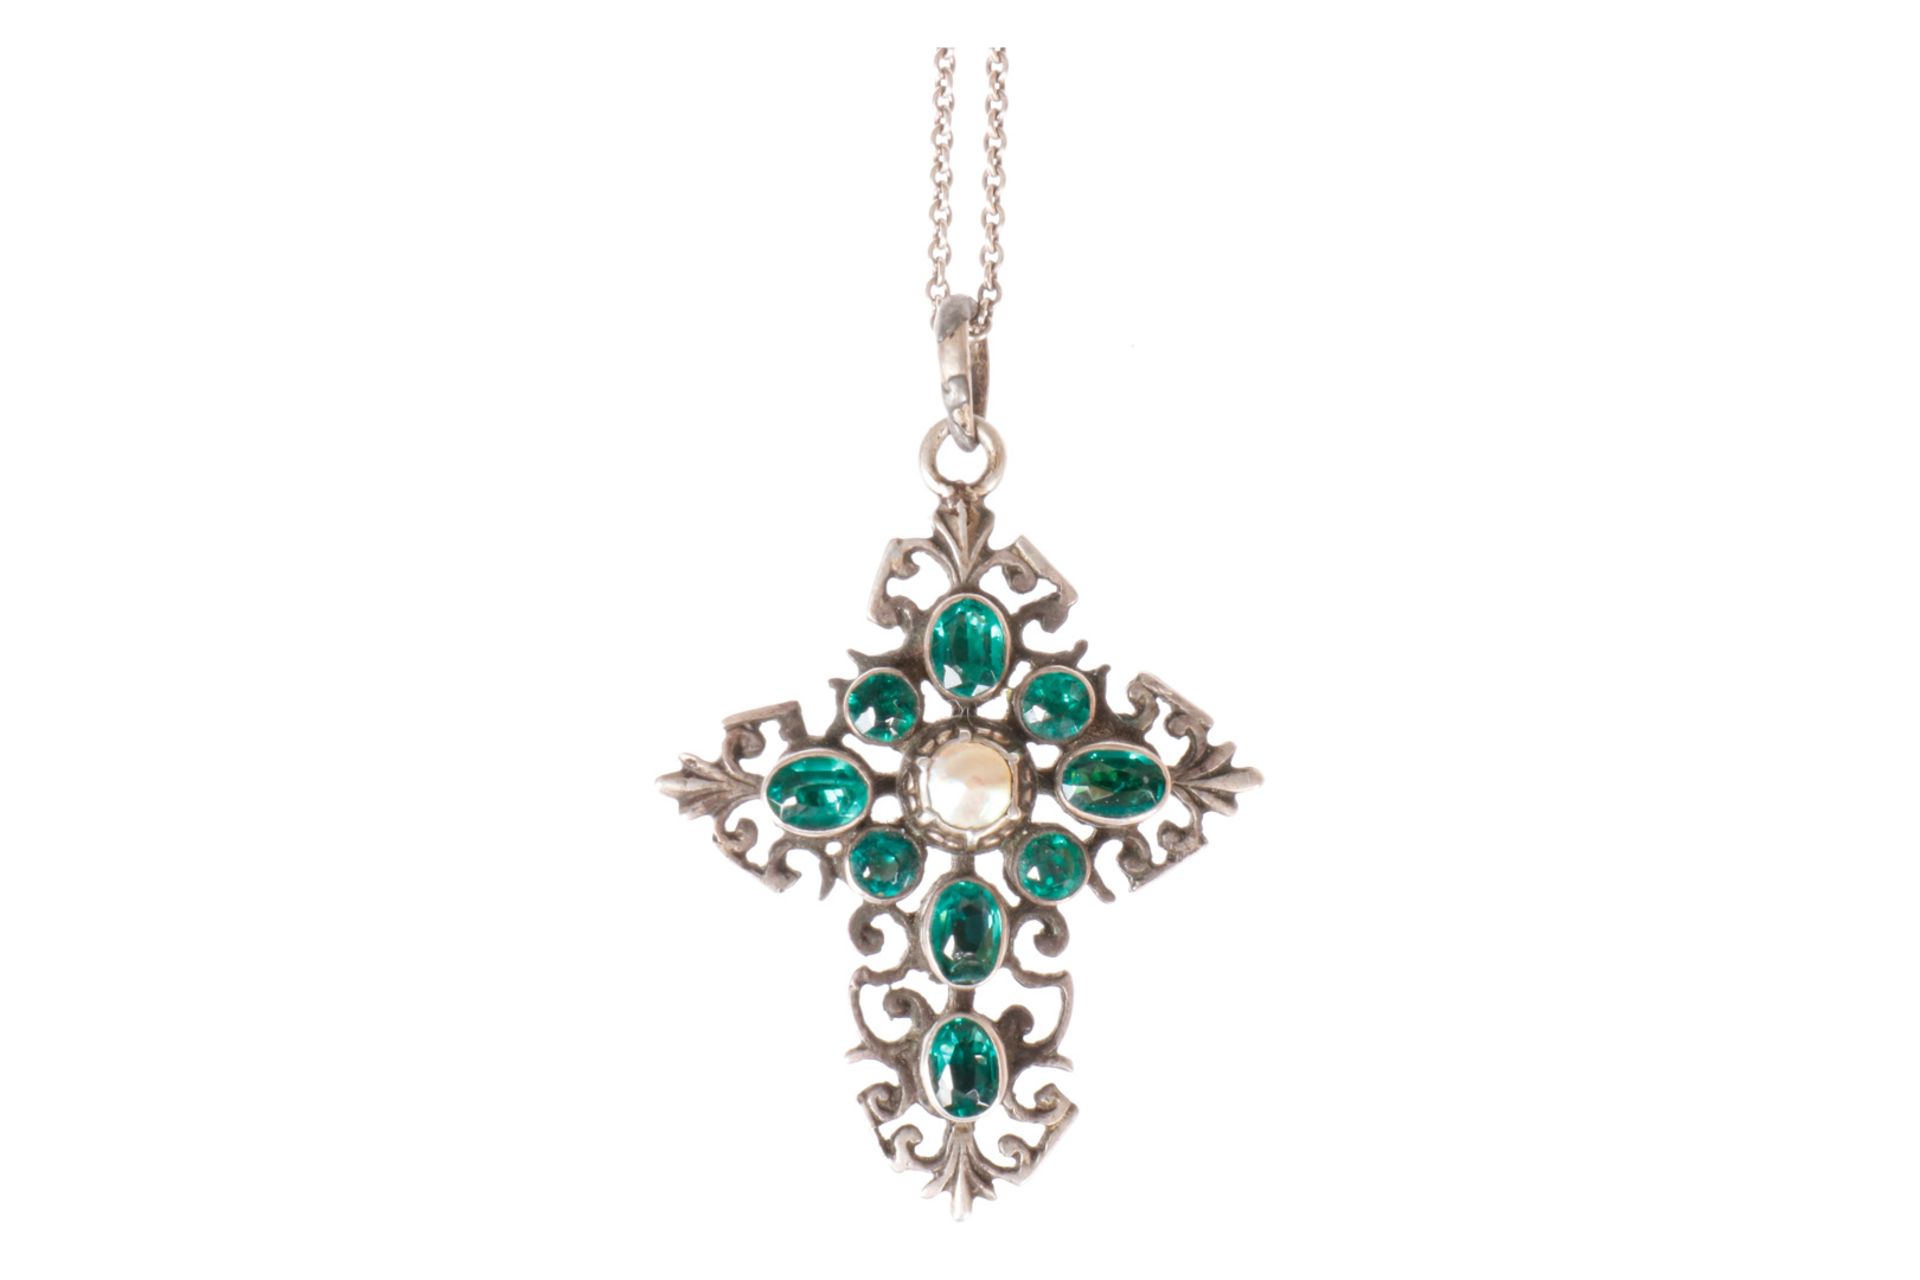 Silberkreuz mit Perle und grünen Farbsteinen, L 4